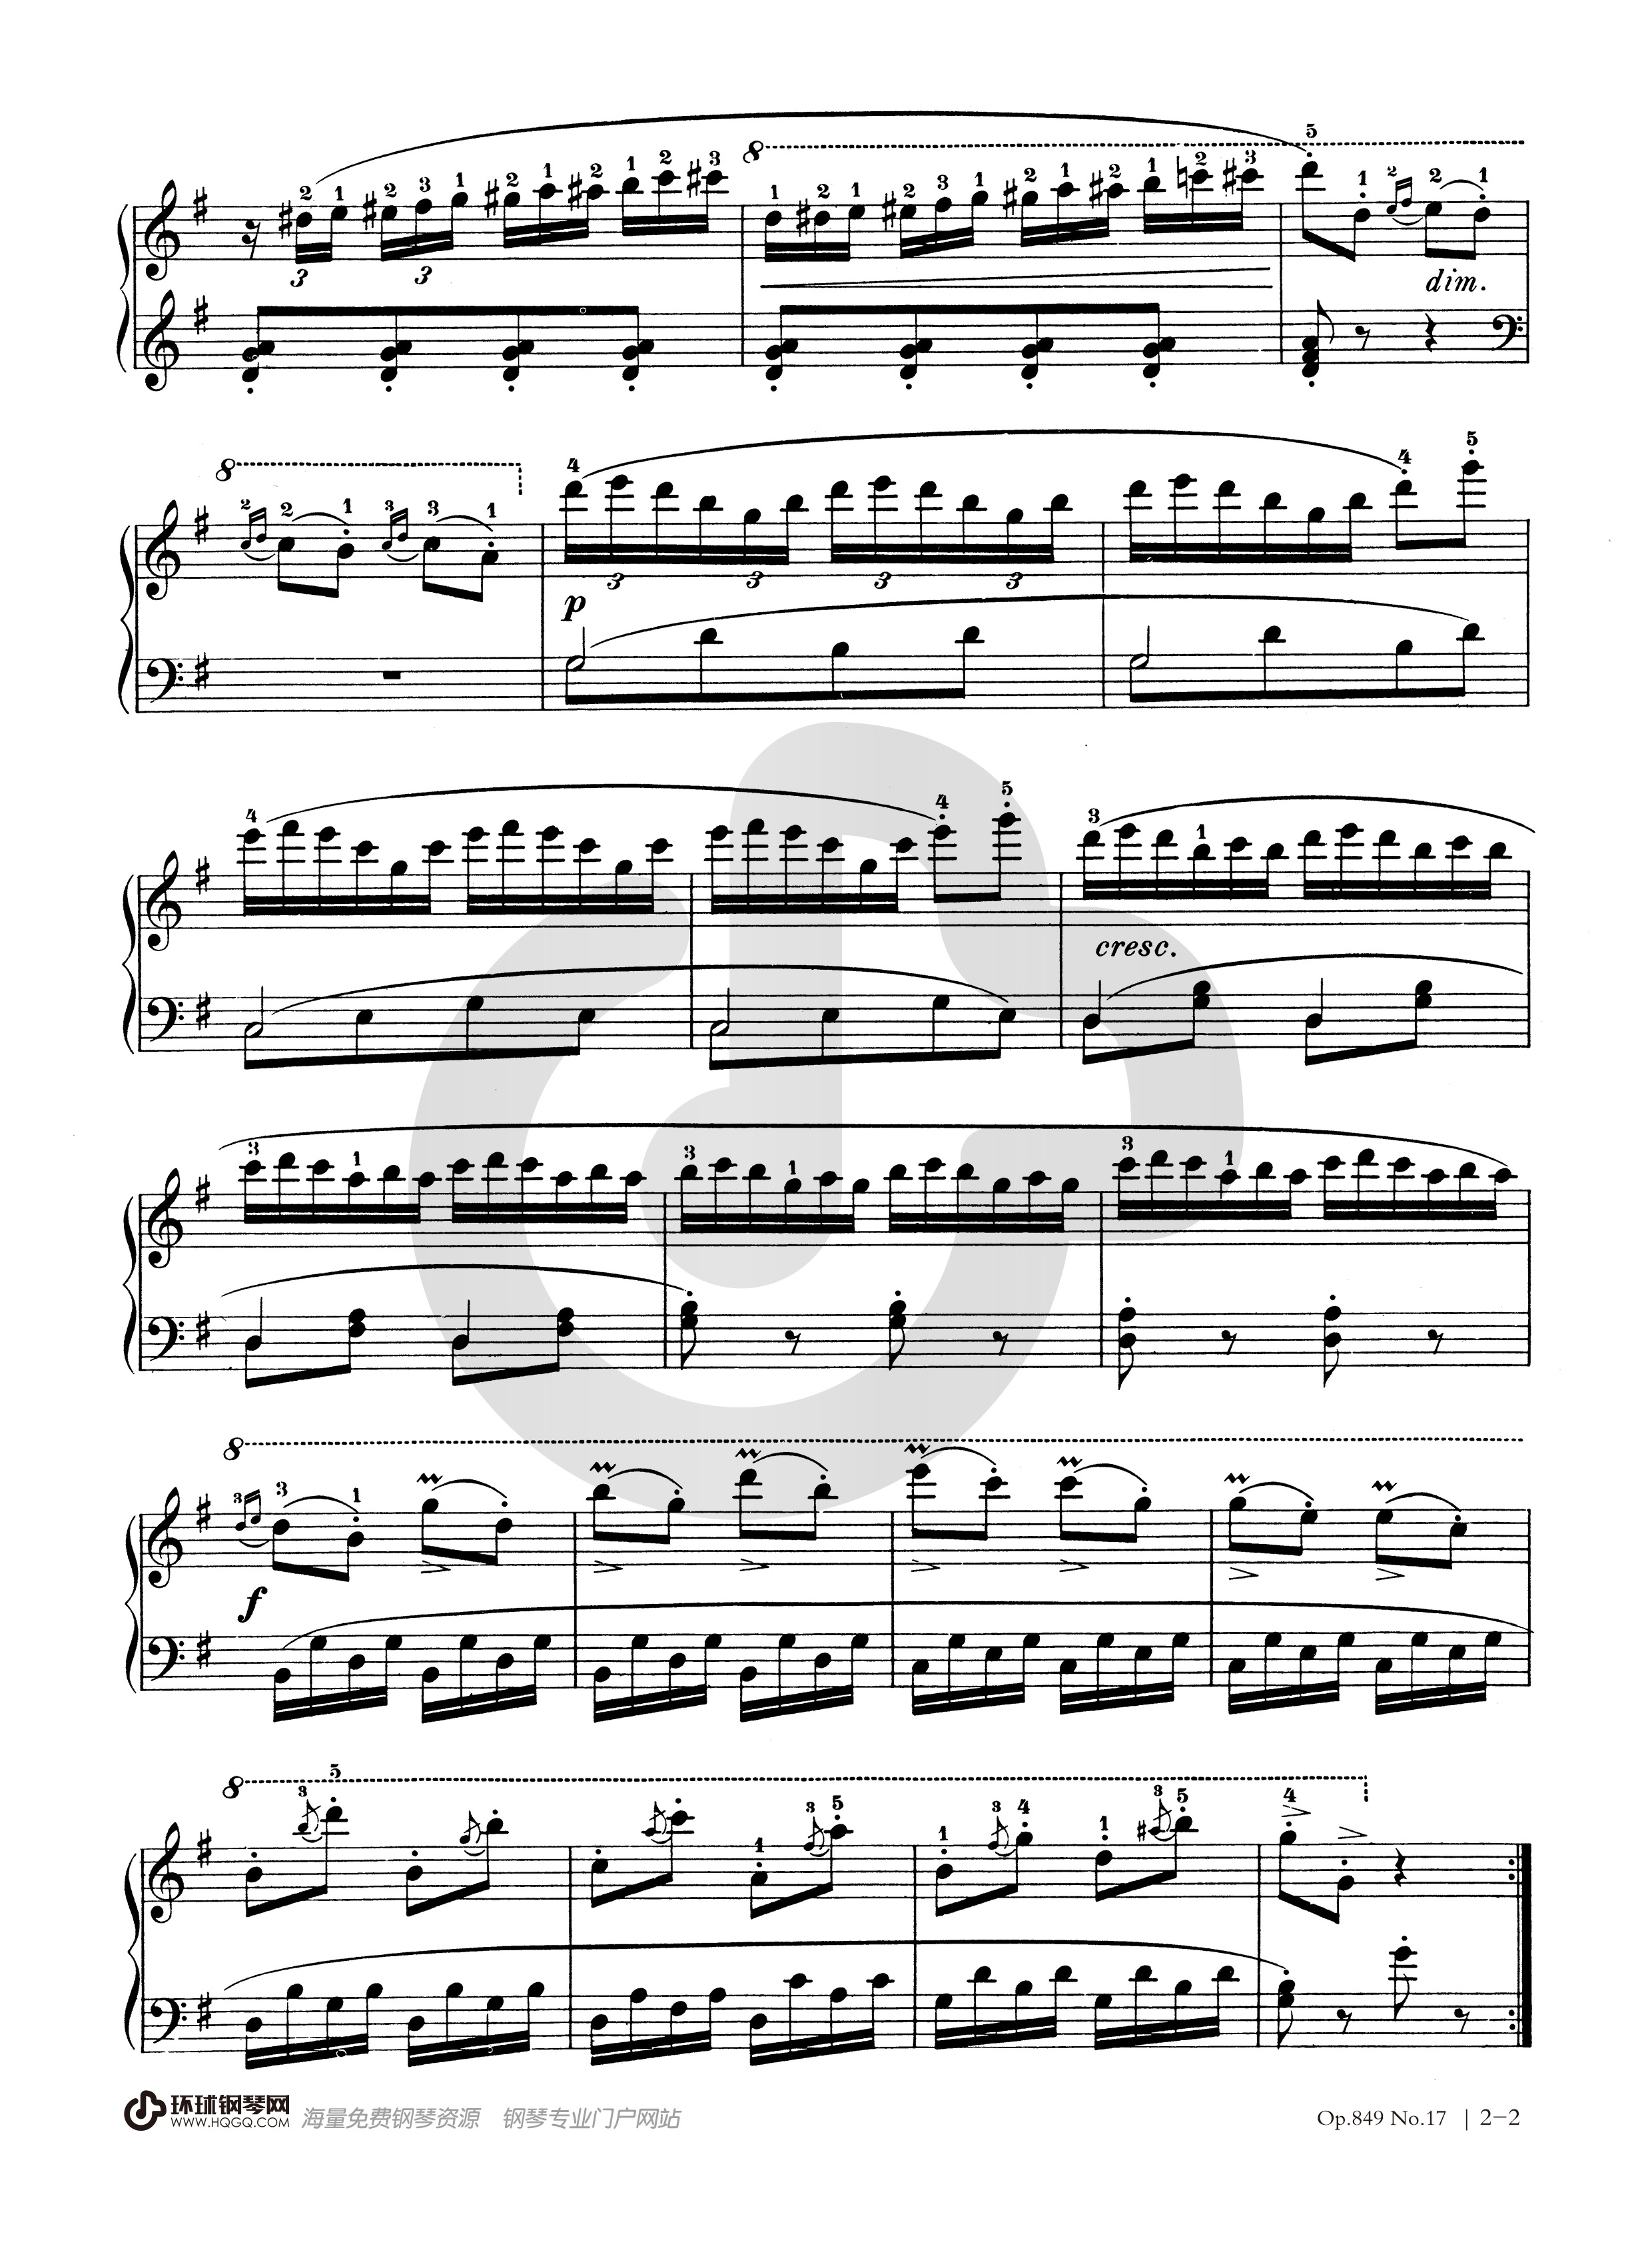 车尔尼849第16条钢琴谱图片